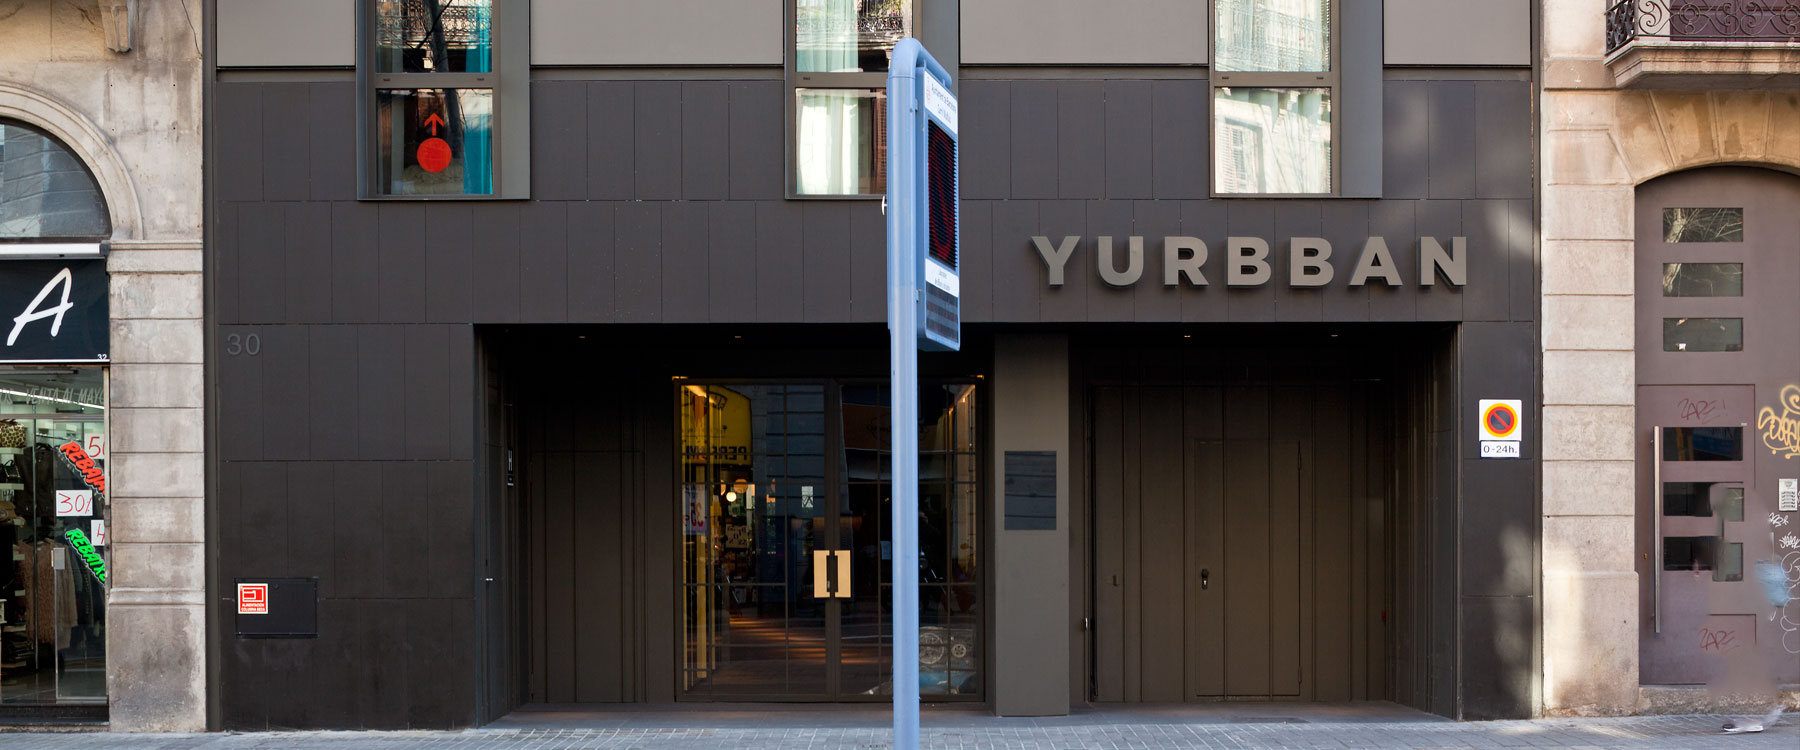 Hotel Yurbban Trafalgar